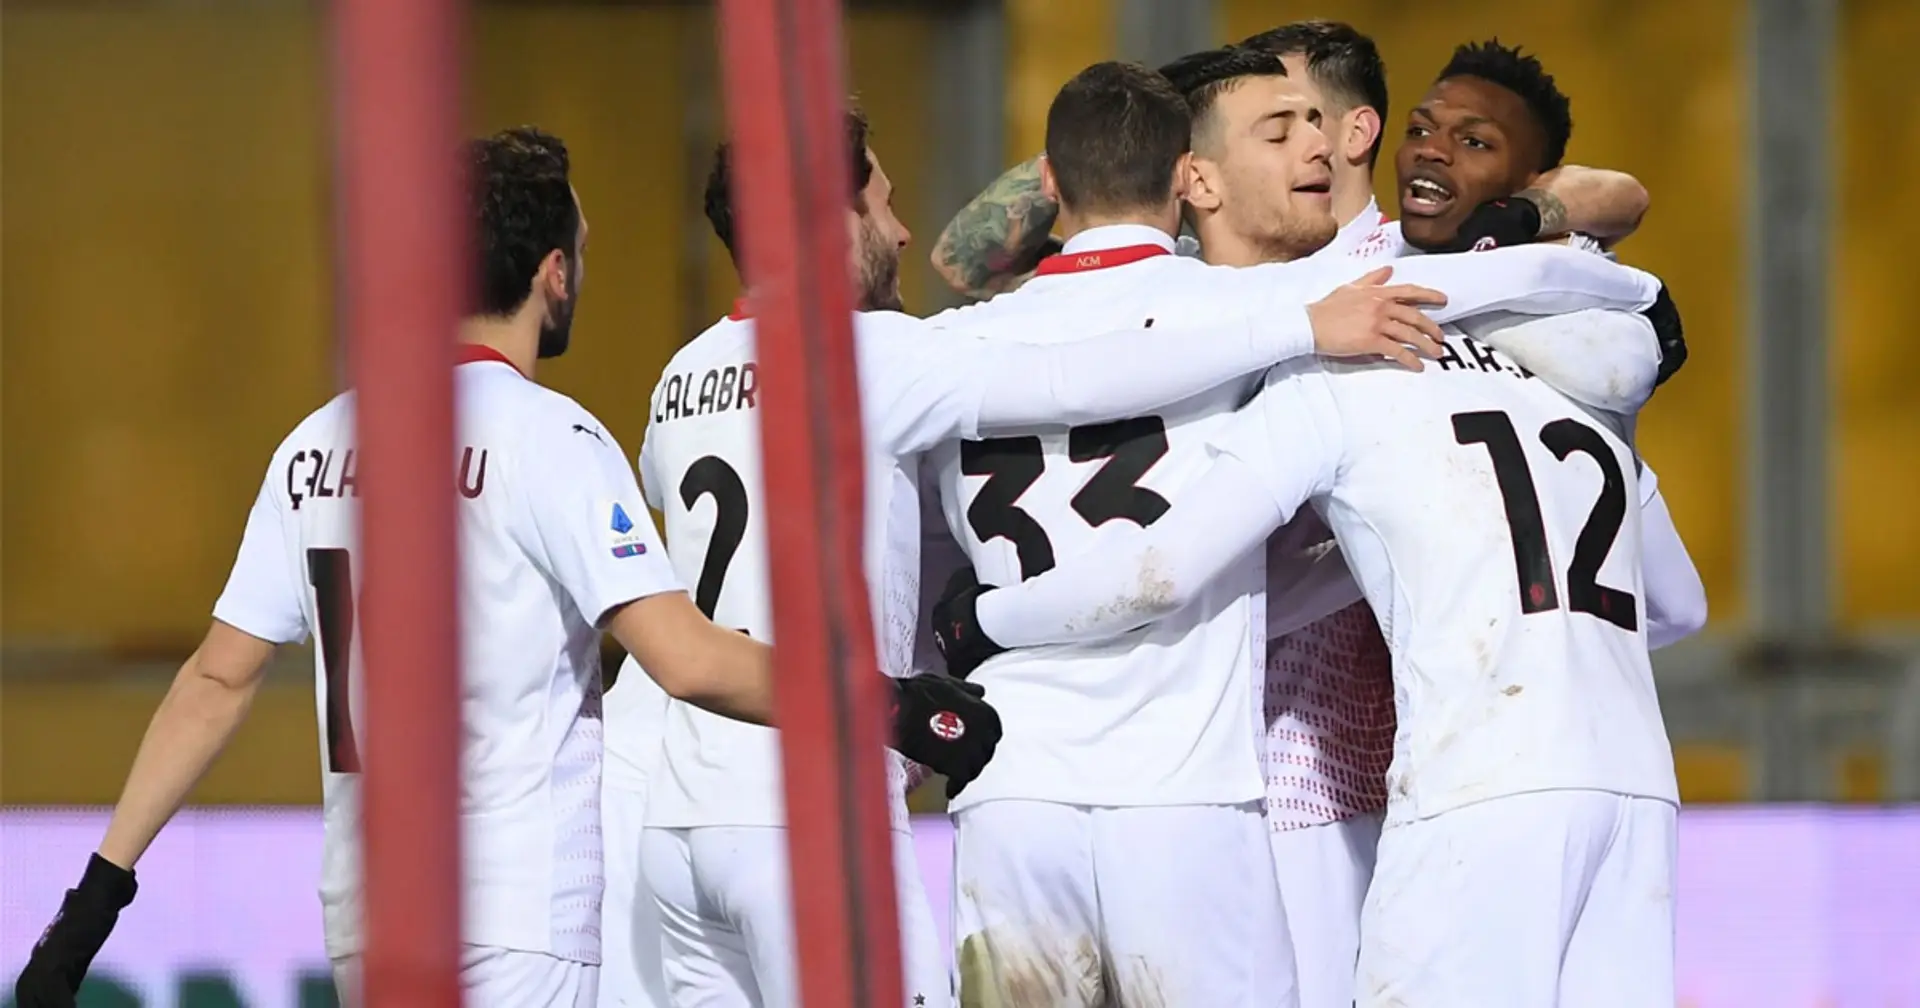 Gufi nerazzurri, sorpasso fallito: il Milan in 10 passa a Benevento